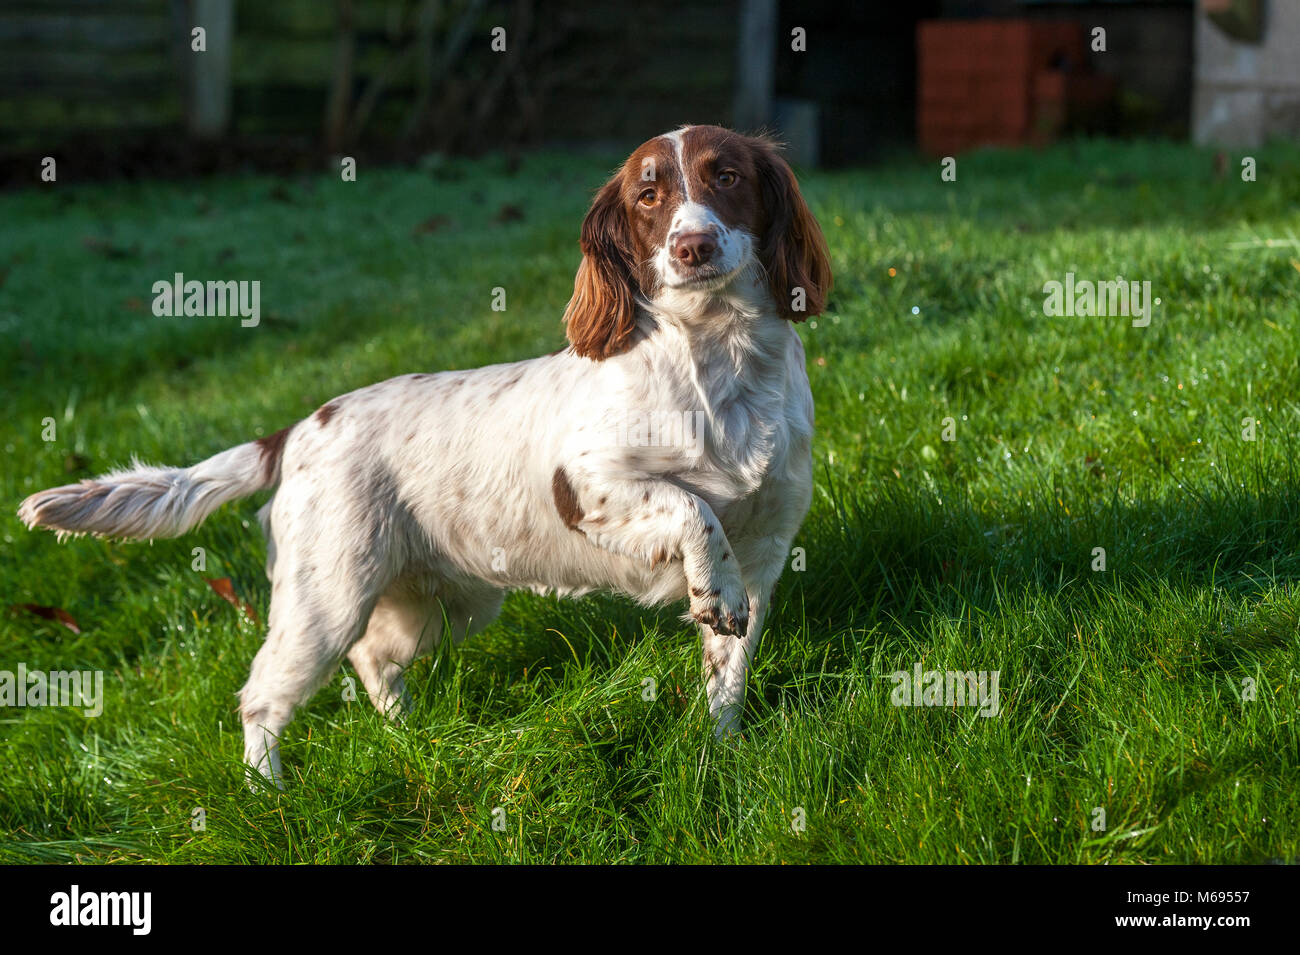 Der English Springer Spaniel ist eine Rasse von Gun Dog in der Spaniel Familie traditionell zum Spülen und Abrufen von Spiel verwendet werden. Stockfoto